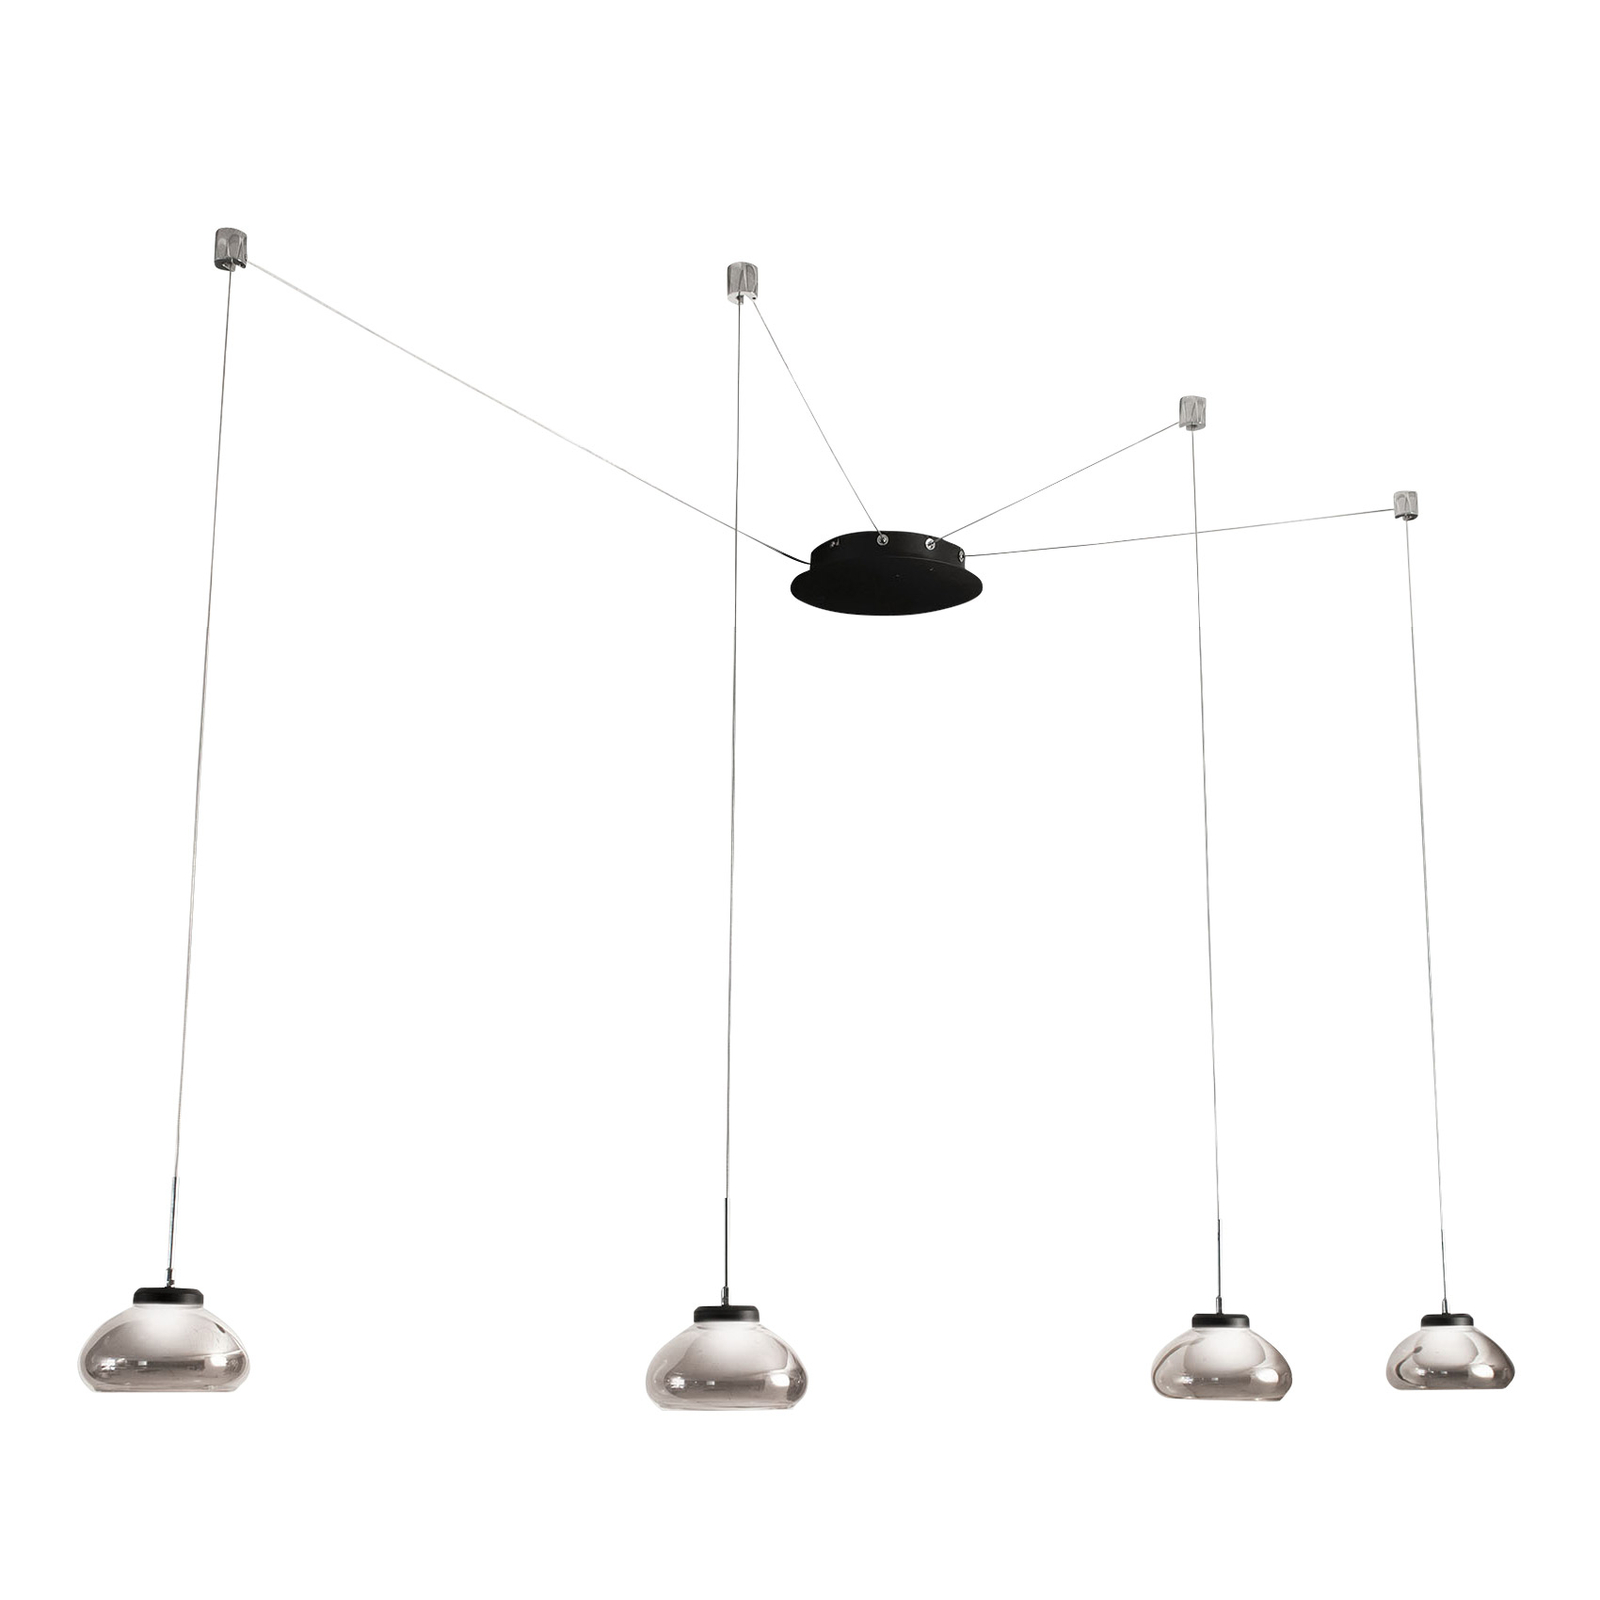 LED hanglamp Arabella, 4 lamps, zwart/grijs/helder